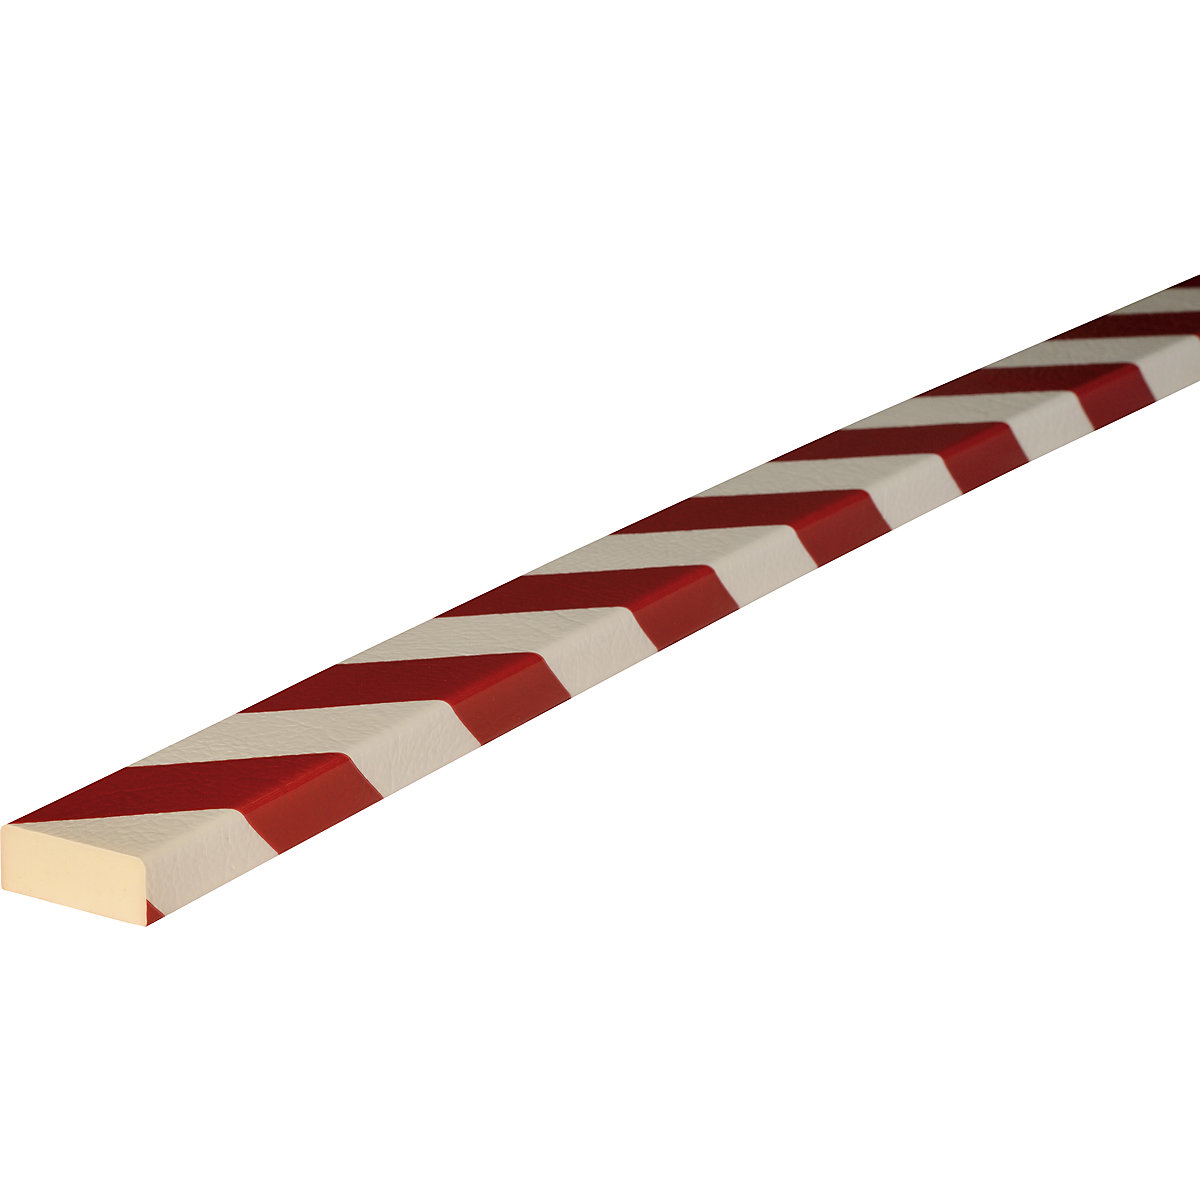 Proteção de superfícies Knuffi® – SHG, tipo D, 1 rolo de 5 m, vermelho/branco-19